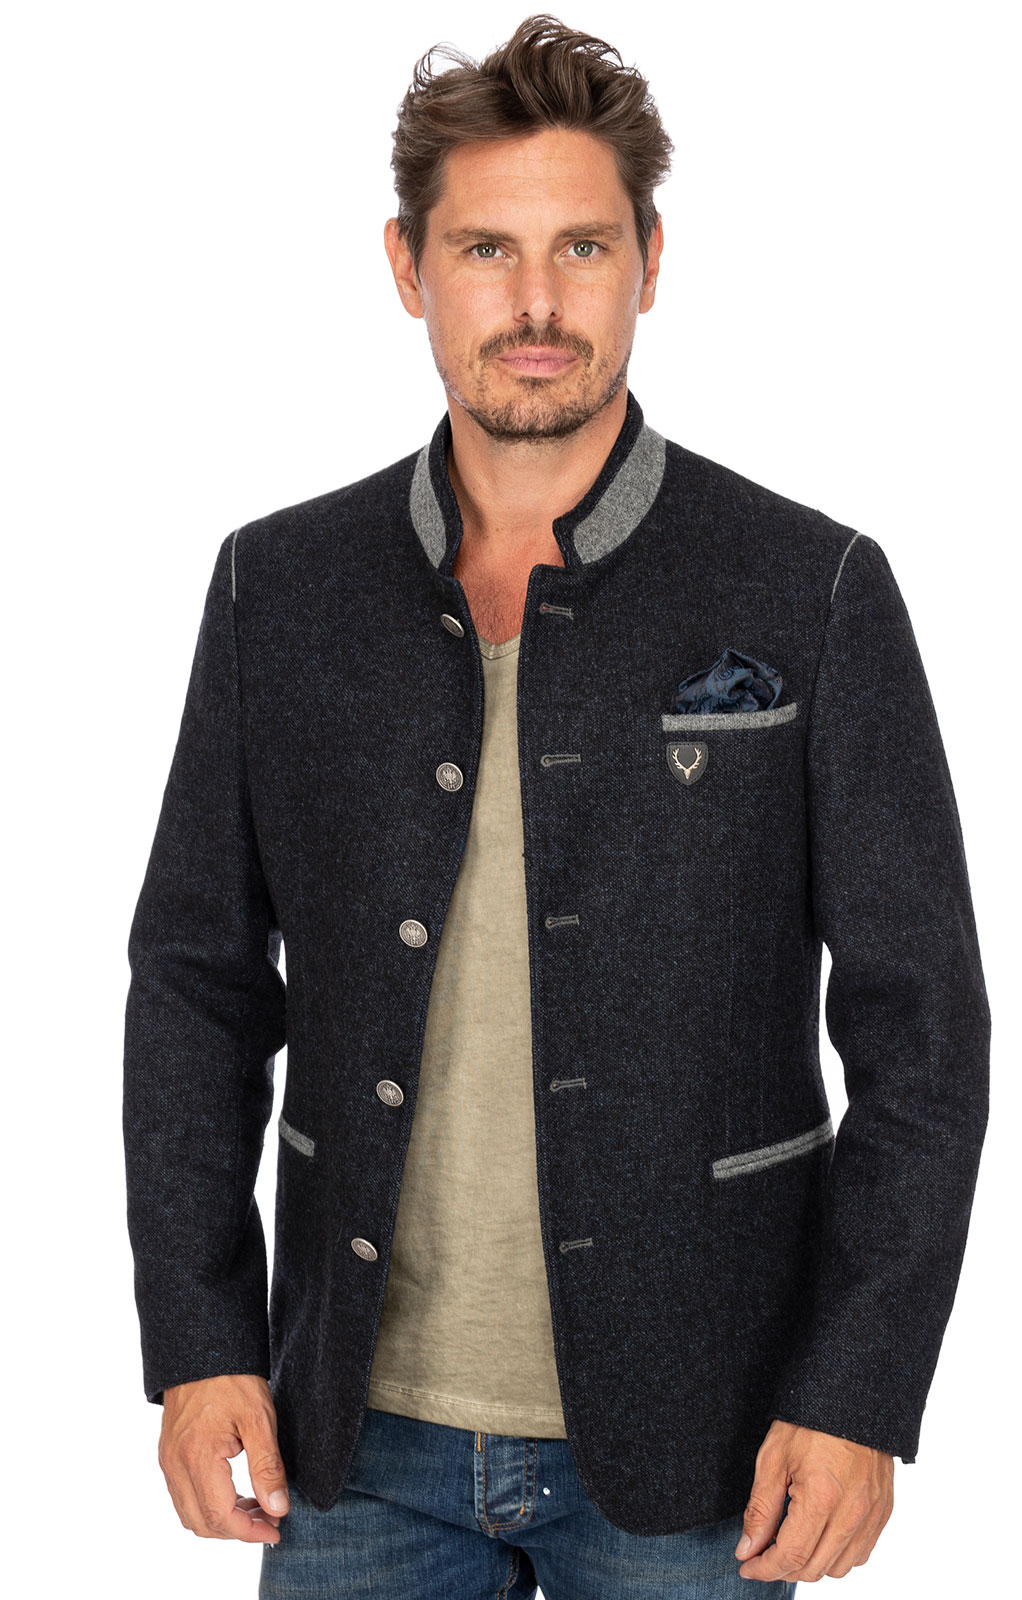 weitere Bilder von German traditional jacket MARLON dark blue gray